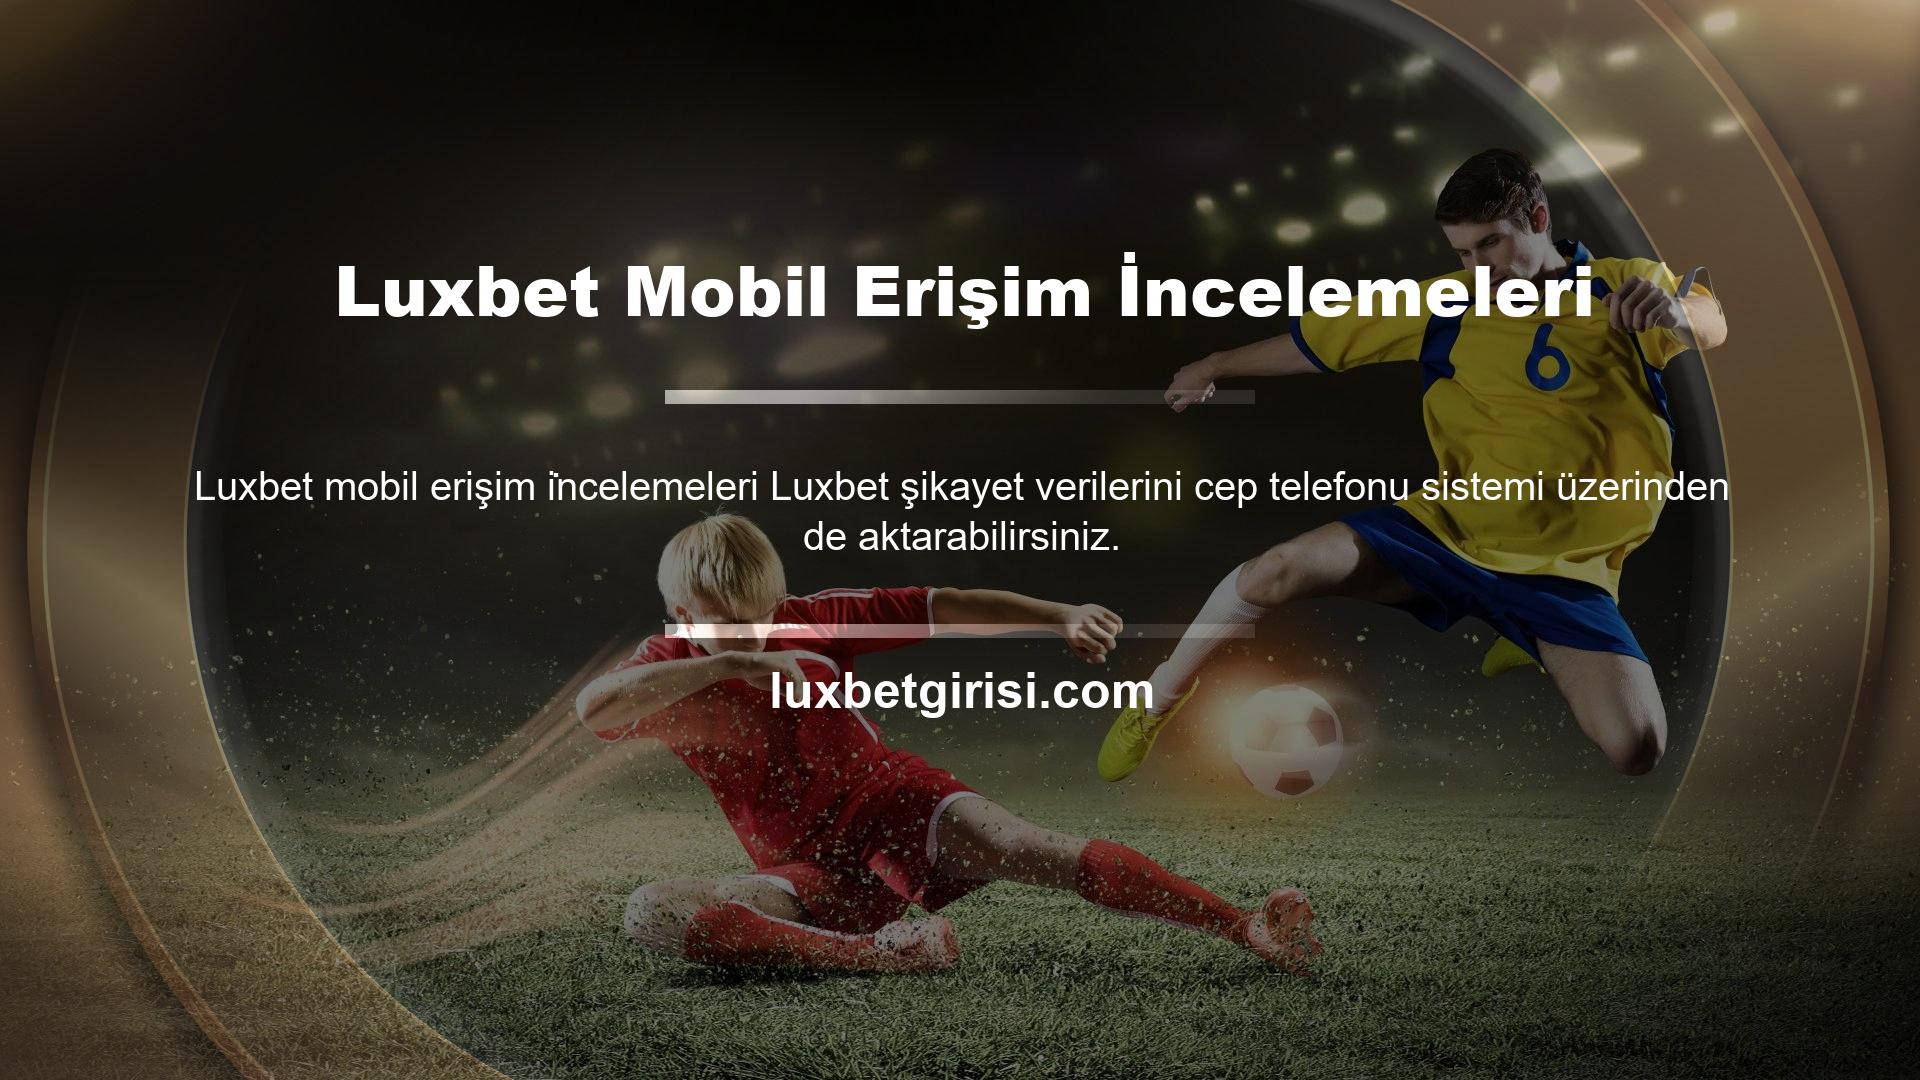 Luxbet Mobil Erişim İncelemeleri